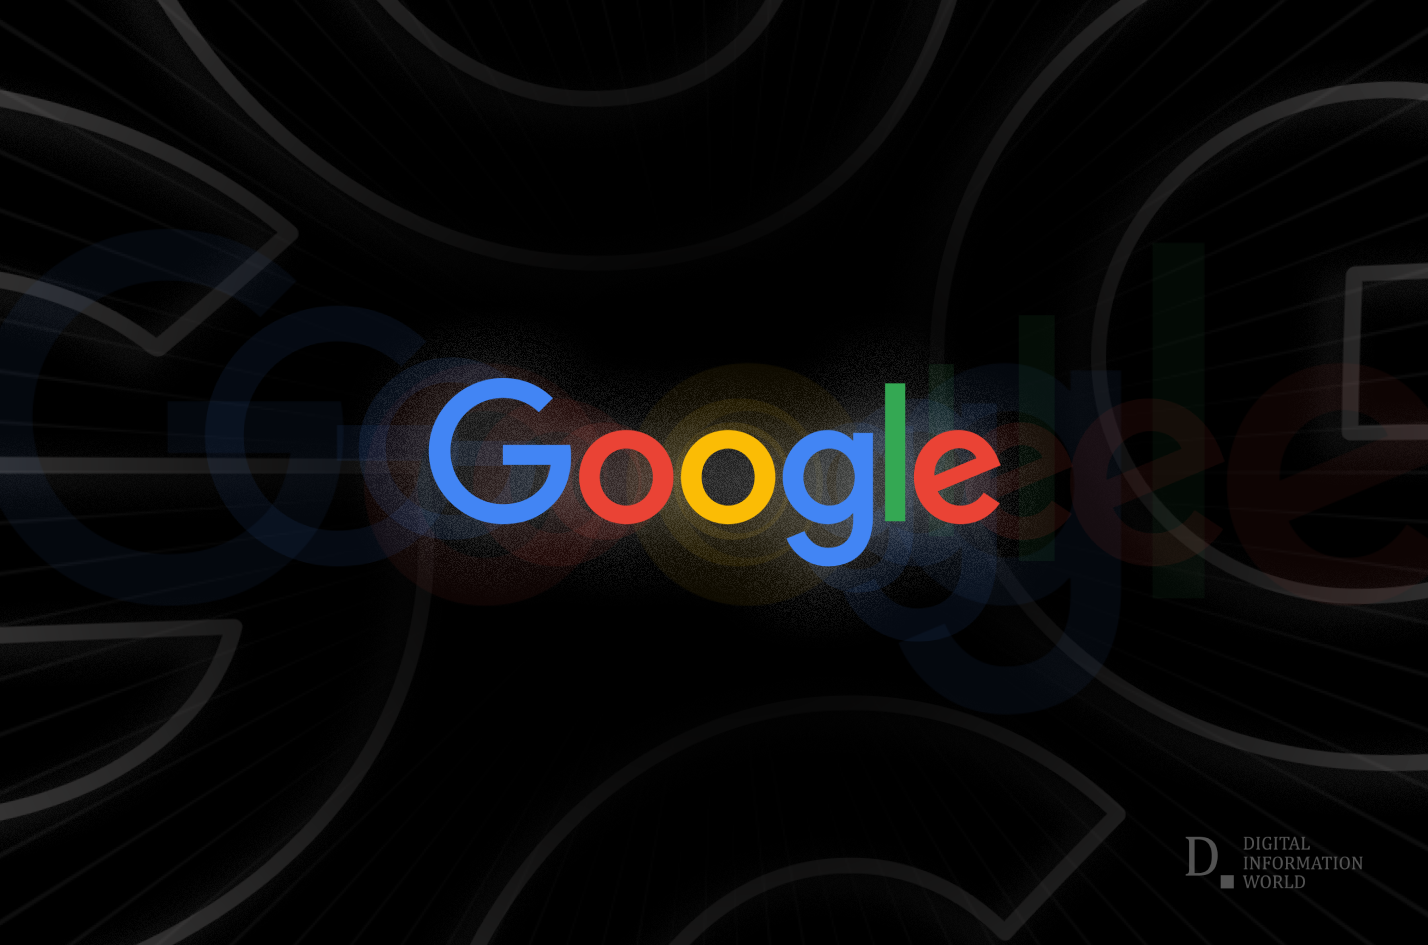 Google dice que la restricción de edad puede evitar que los sitios aparezcan en Google Discover / Digital Information World